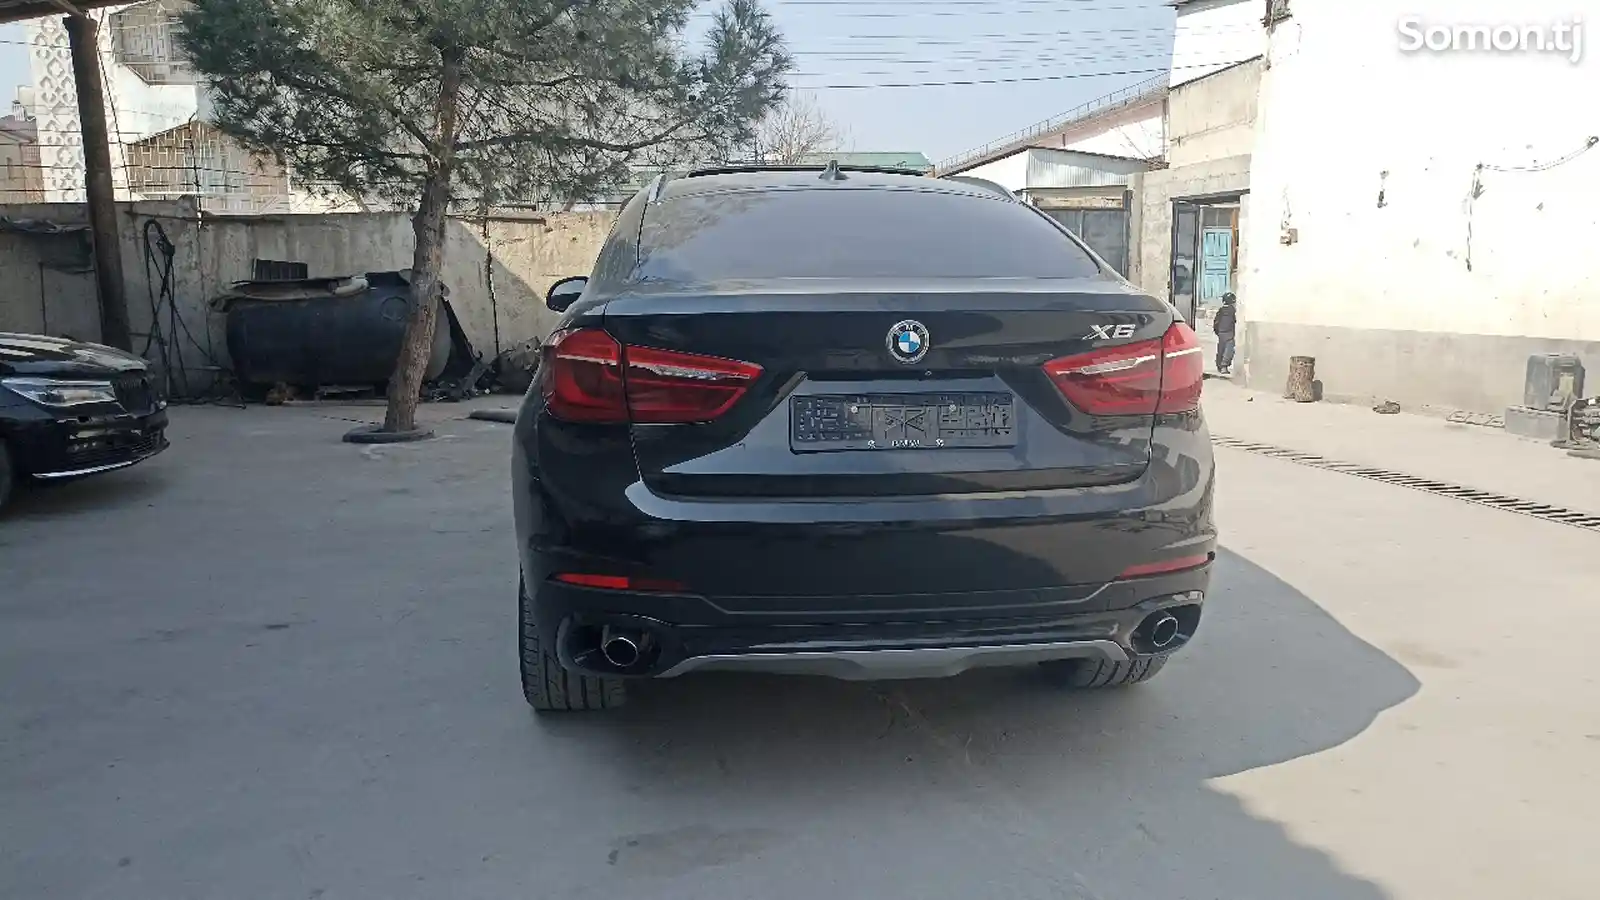 BMW X6, 2016-3